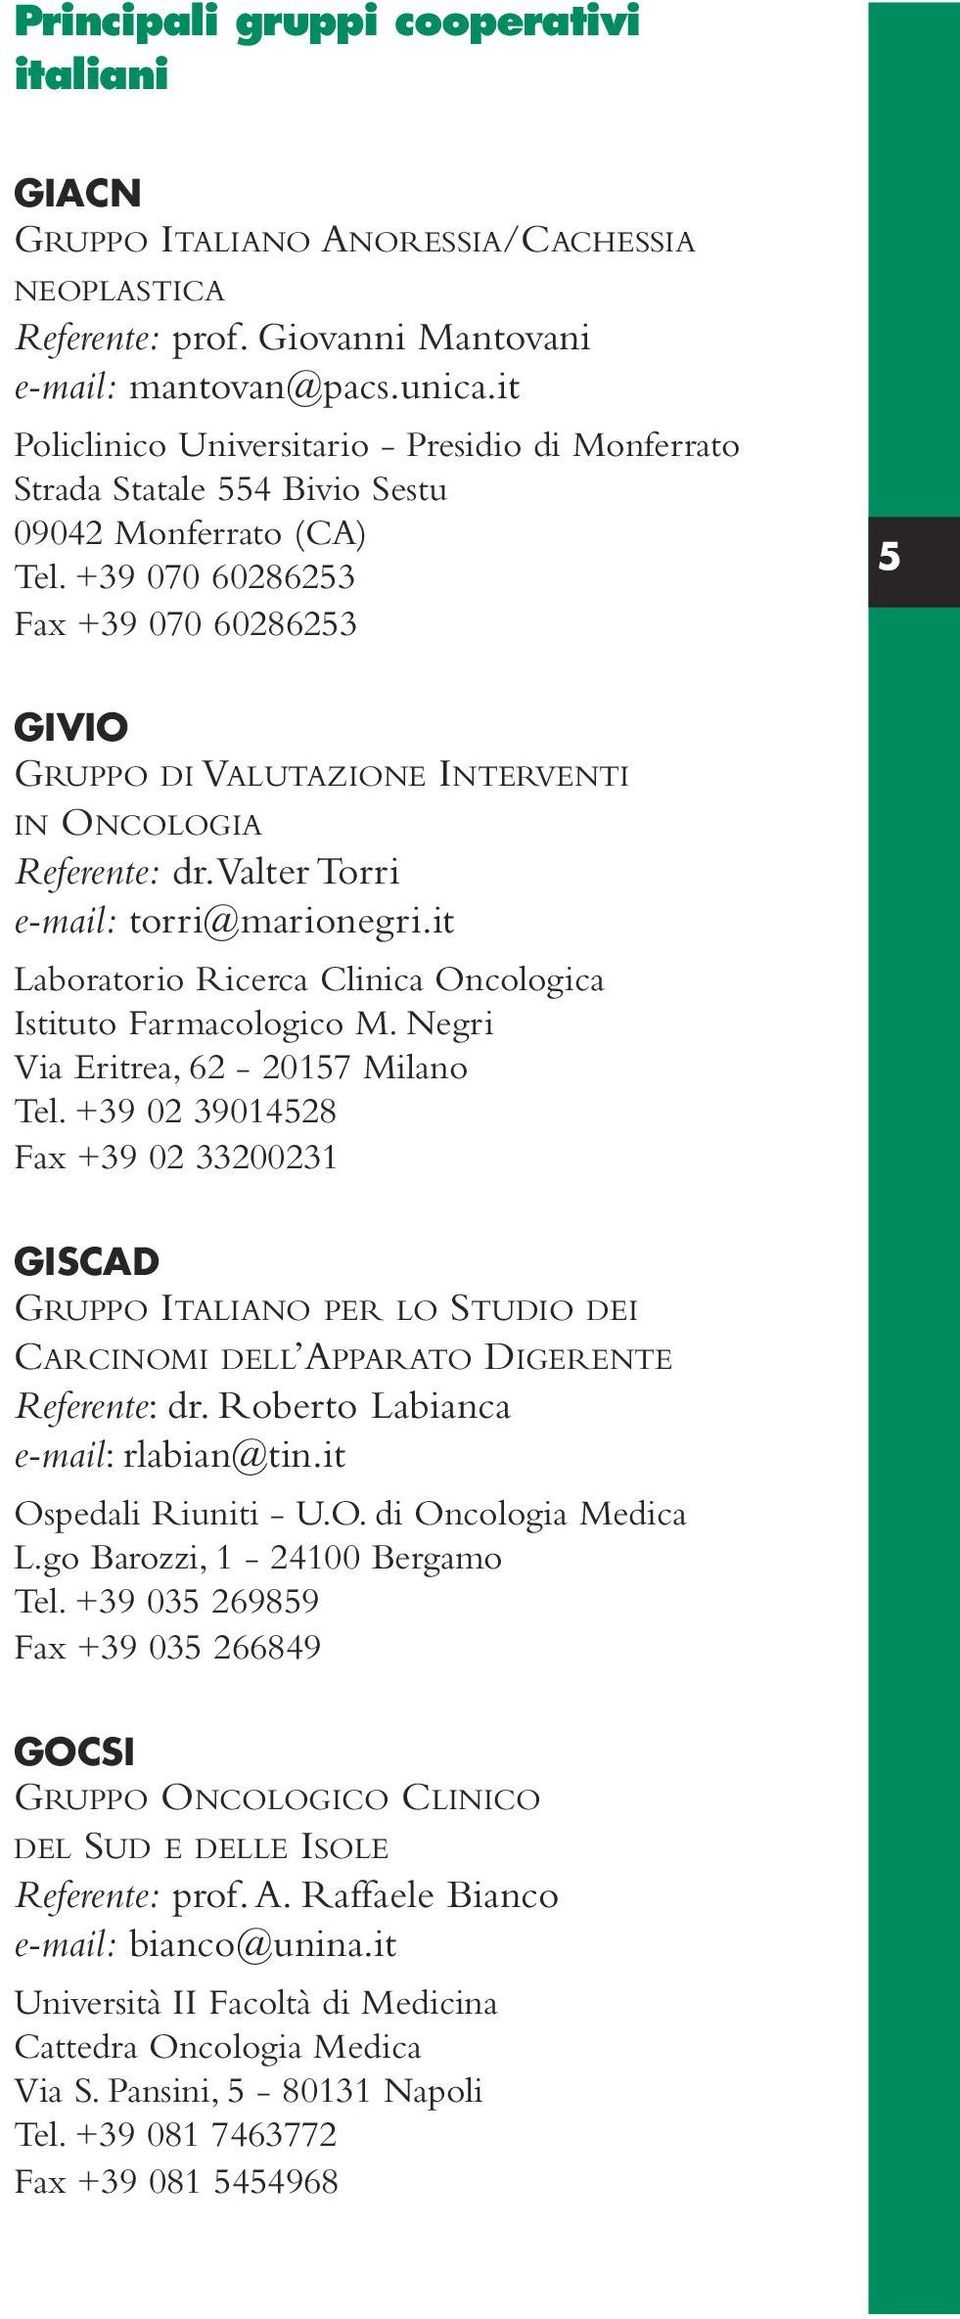 +39 070 60286253 Fax +39 070 60286253 5 GIVIO GRUPPO DI VALUTAZIONE INTERVENTI IN ONCOLOGIA Referente: dr.valter Torri e-mail: torri@marionegri.